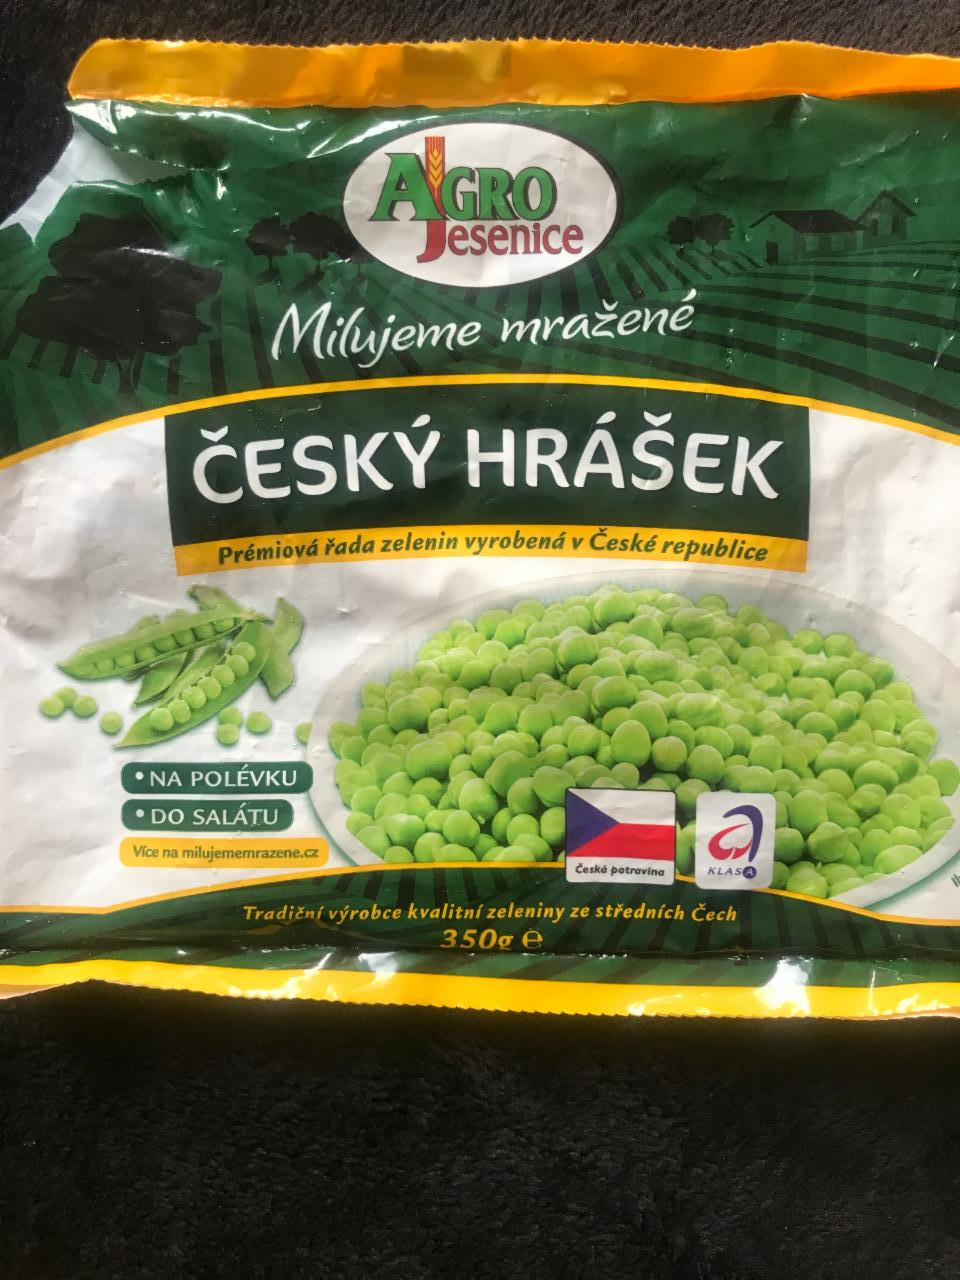 Fotografie - Český hrášek mrazený Agro Jesenice